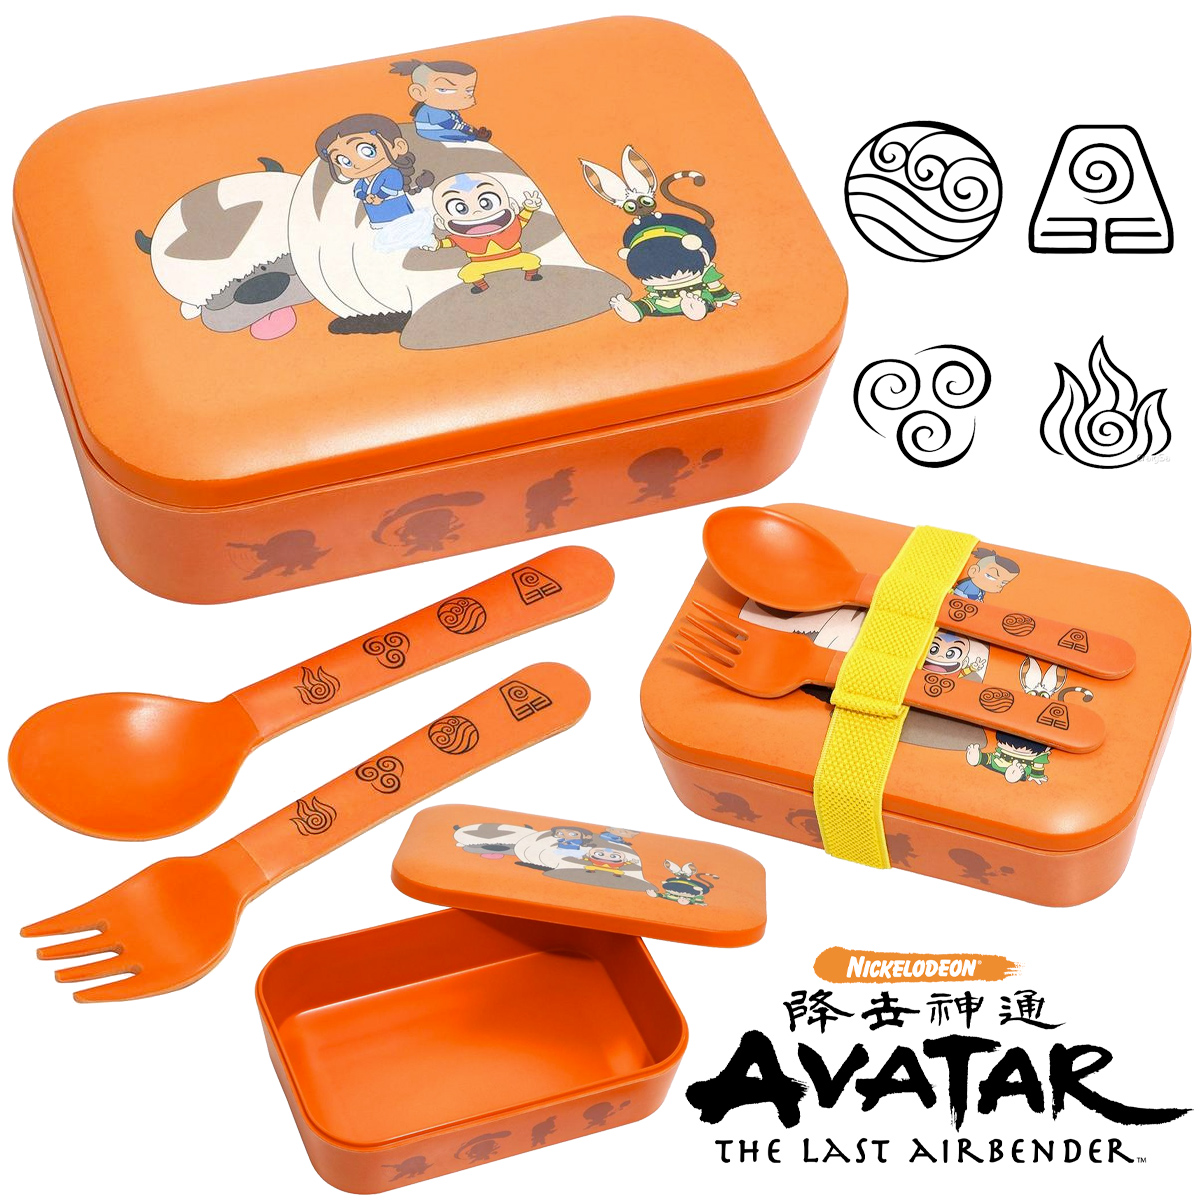 Marmita Bento Box Avatar: A Lenda de Aang